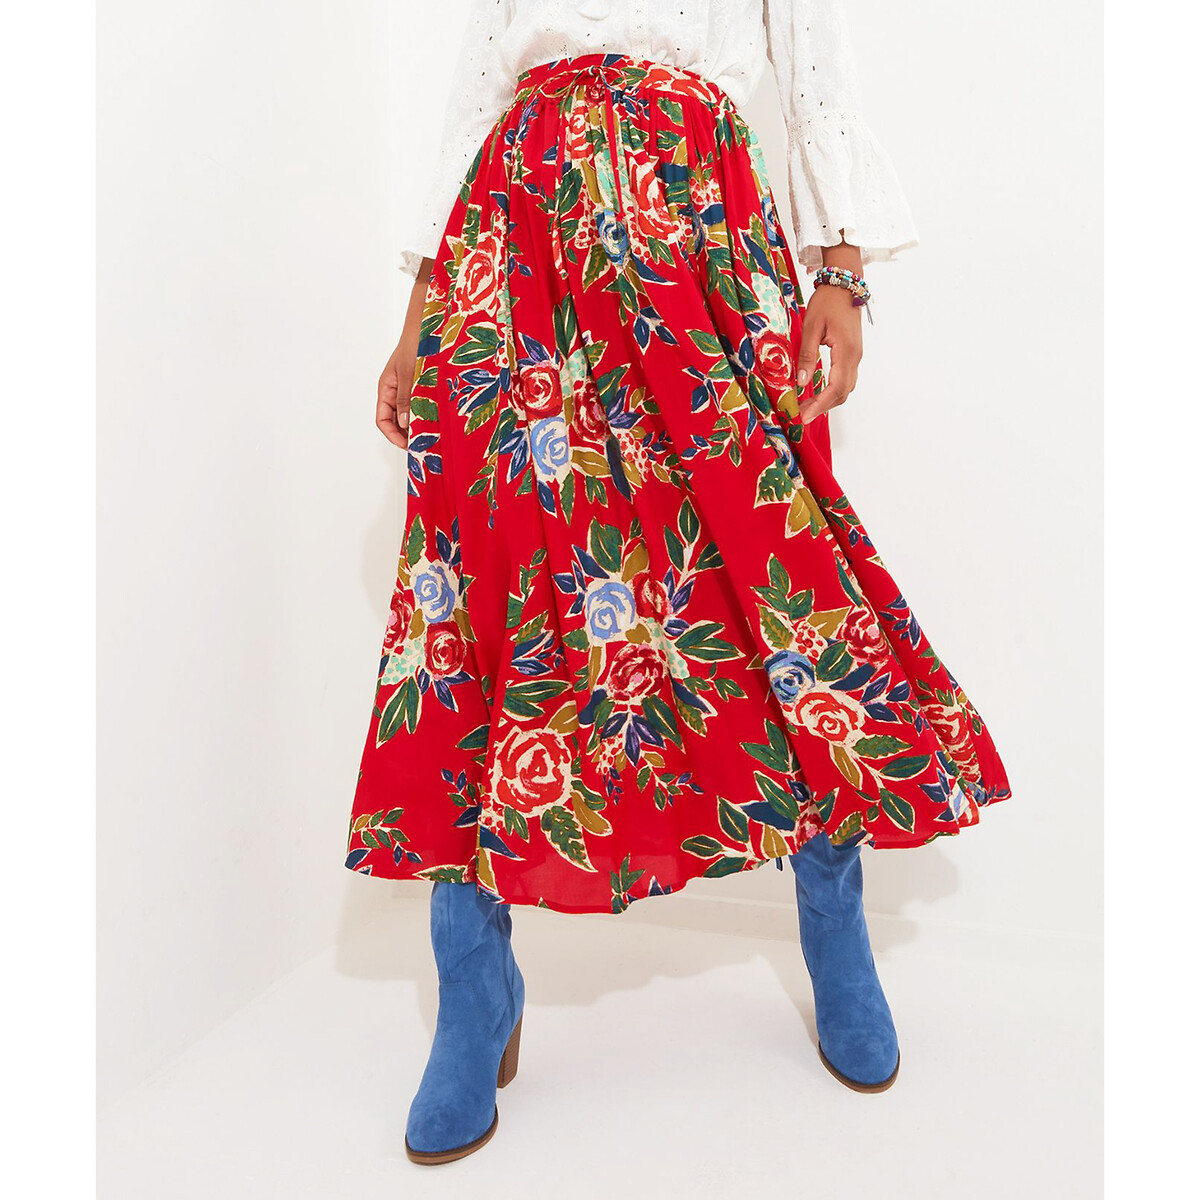 Юбка длинная с цветочным рисунком 42 (FR) - 48 (RUS) красный юбка длинная с асимметричной баской жаккардовая ткань 42 fr 48 rus розовый